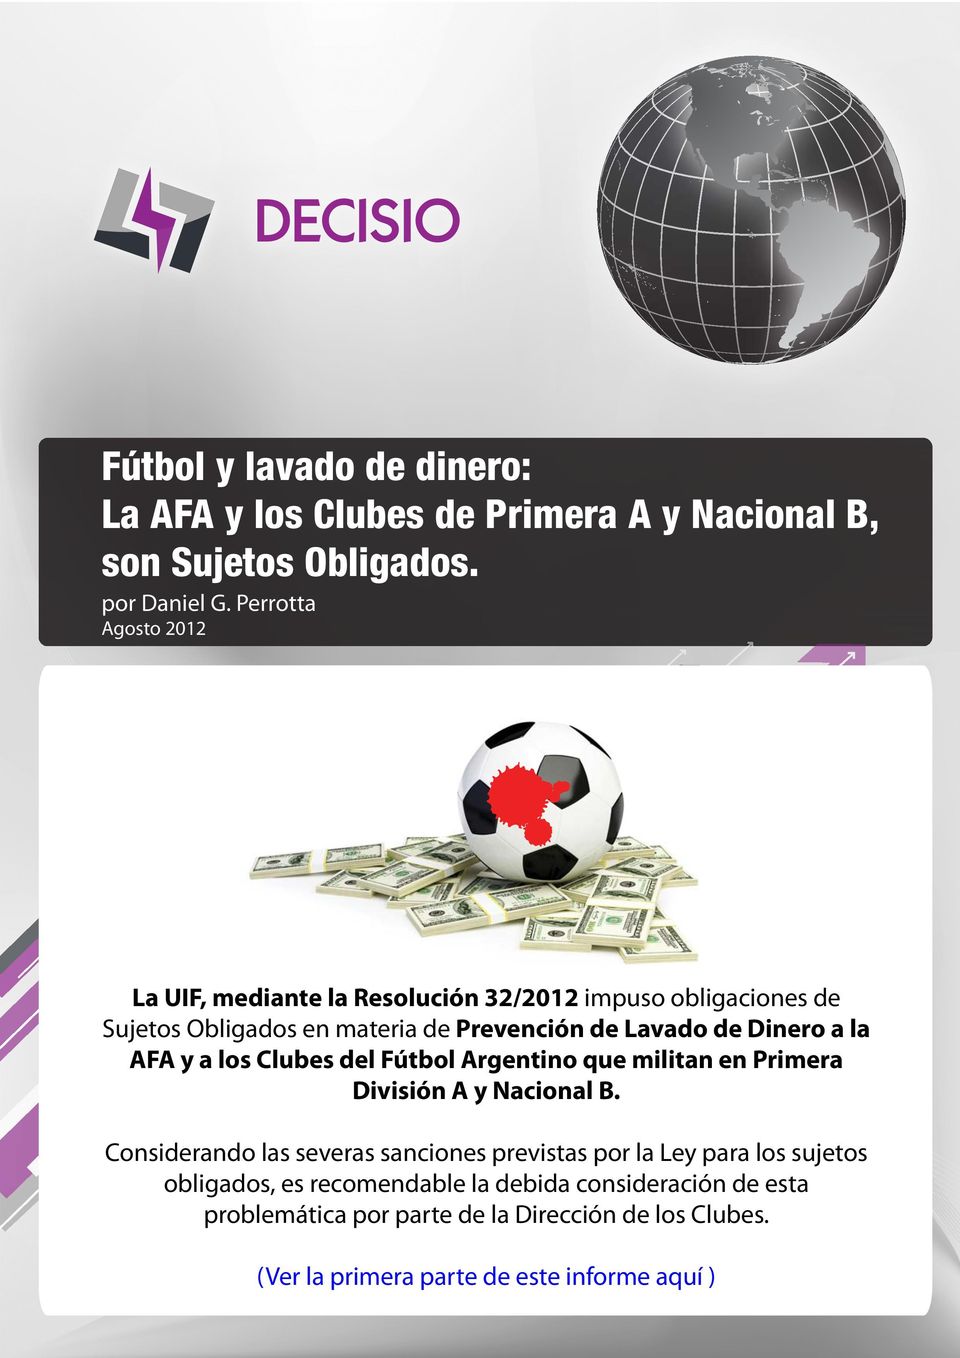 Dinero a la AFA y a los Clubes del Fútbol Argentino que militan en Primera División A y Nacional B.